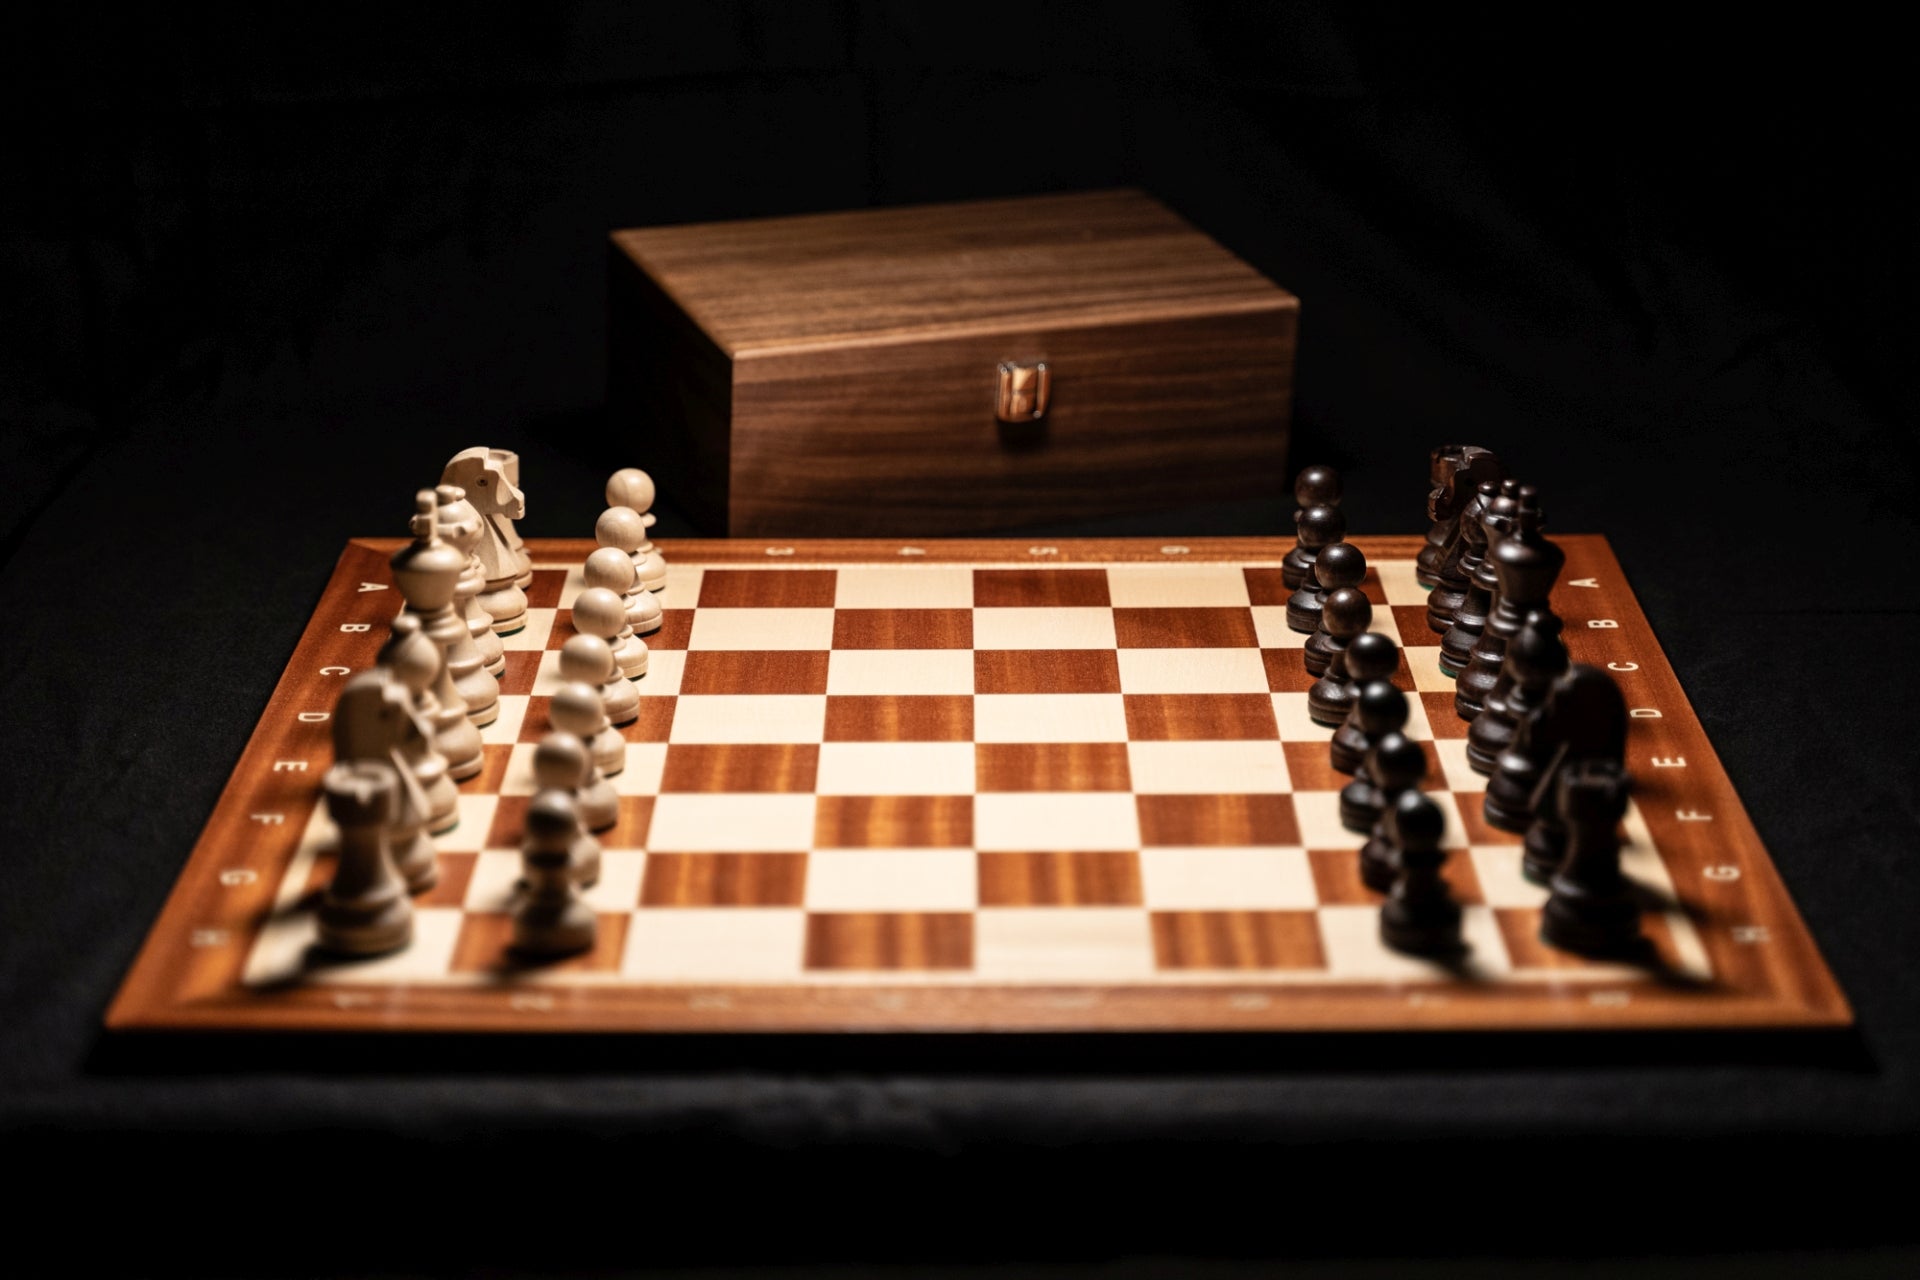 Produktvideo des Schachspiels Amon